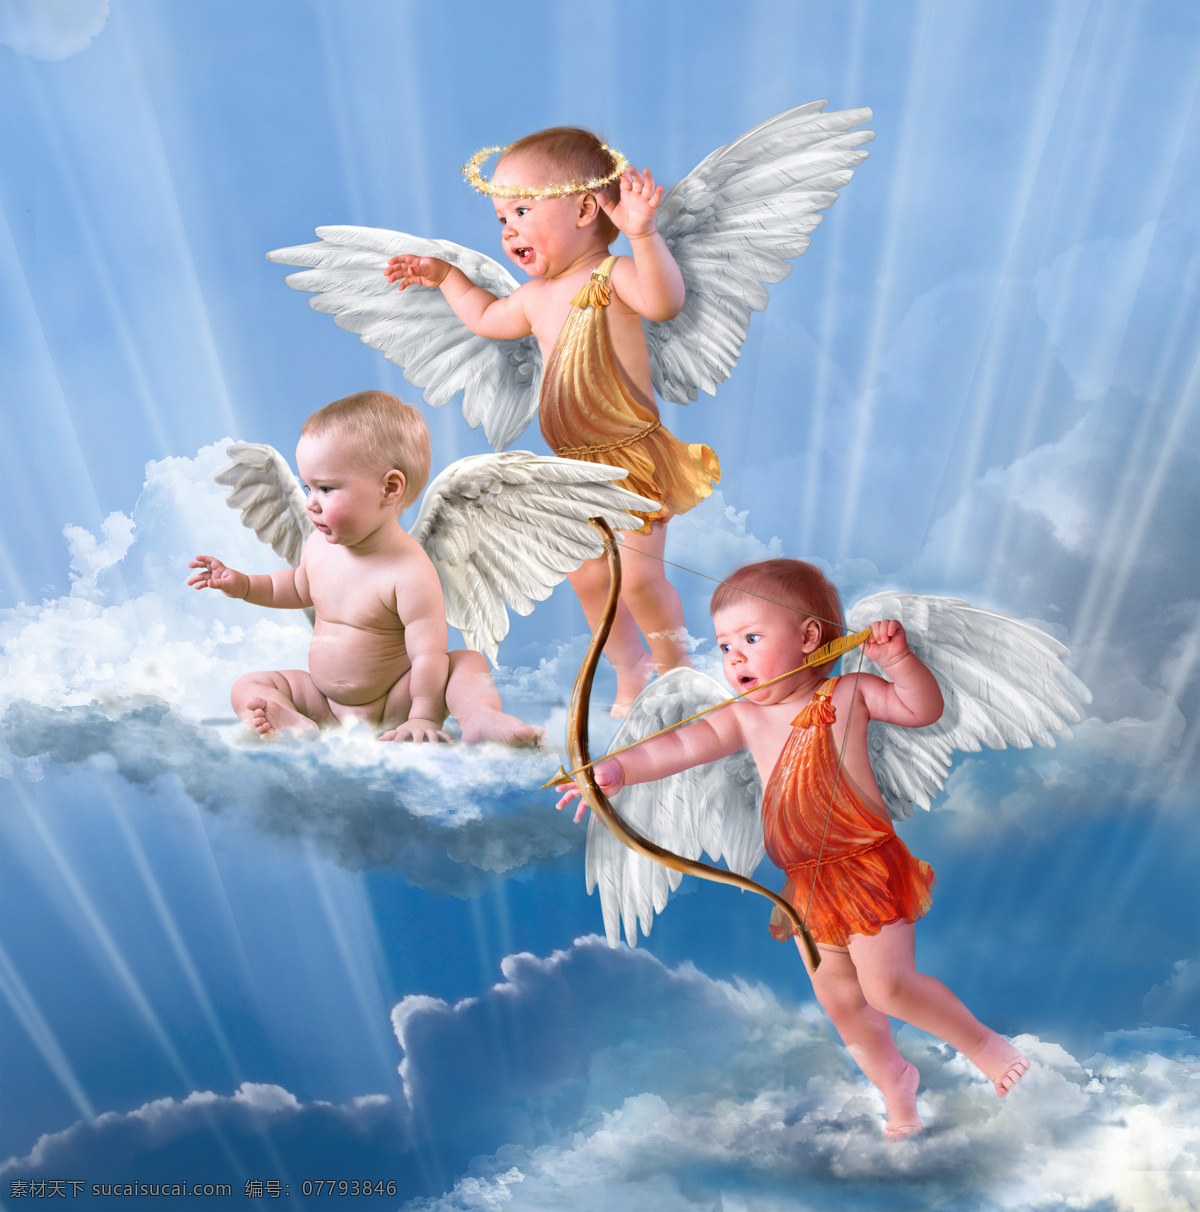 天空 云彩 上 天使 婴儿 宝宝 飞翔 小天使 婴儿天使 宝宝天使 幼儿 宝贝 娃娃 孩子 可爱 婴儿宝宝设计 儿童幼儿 人物图库